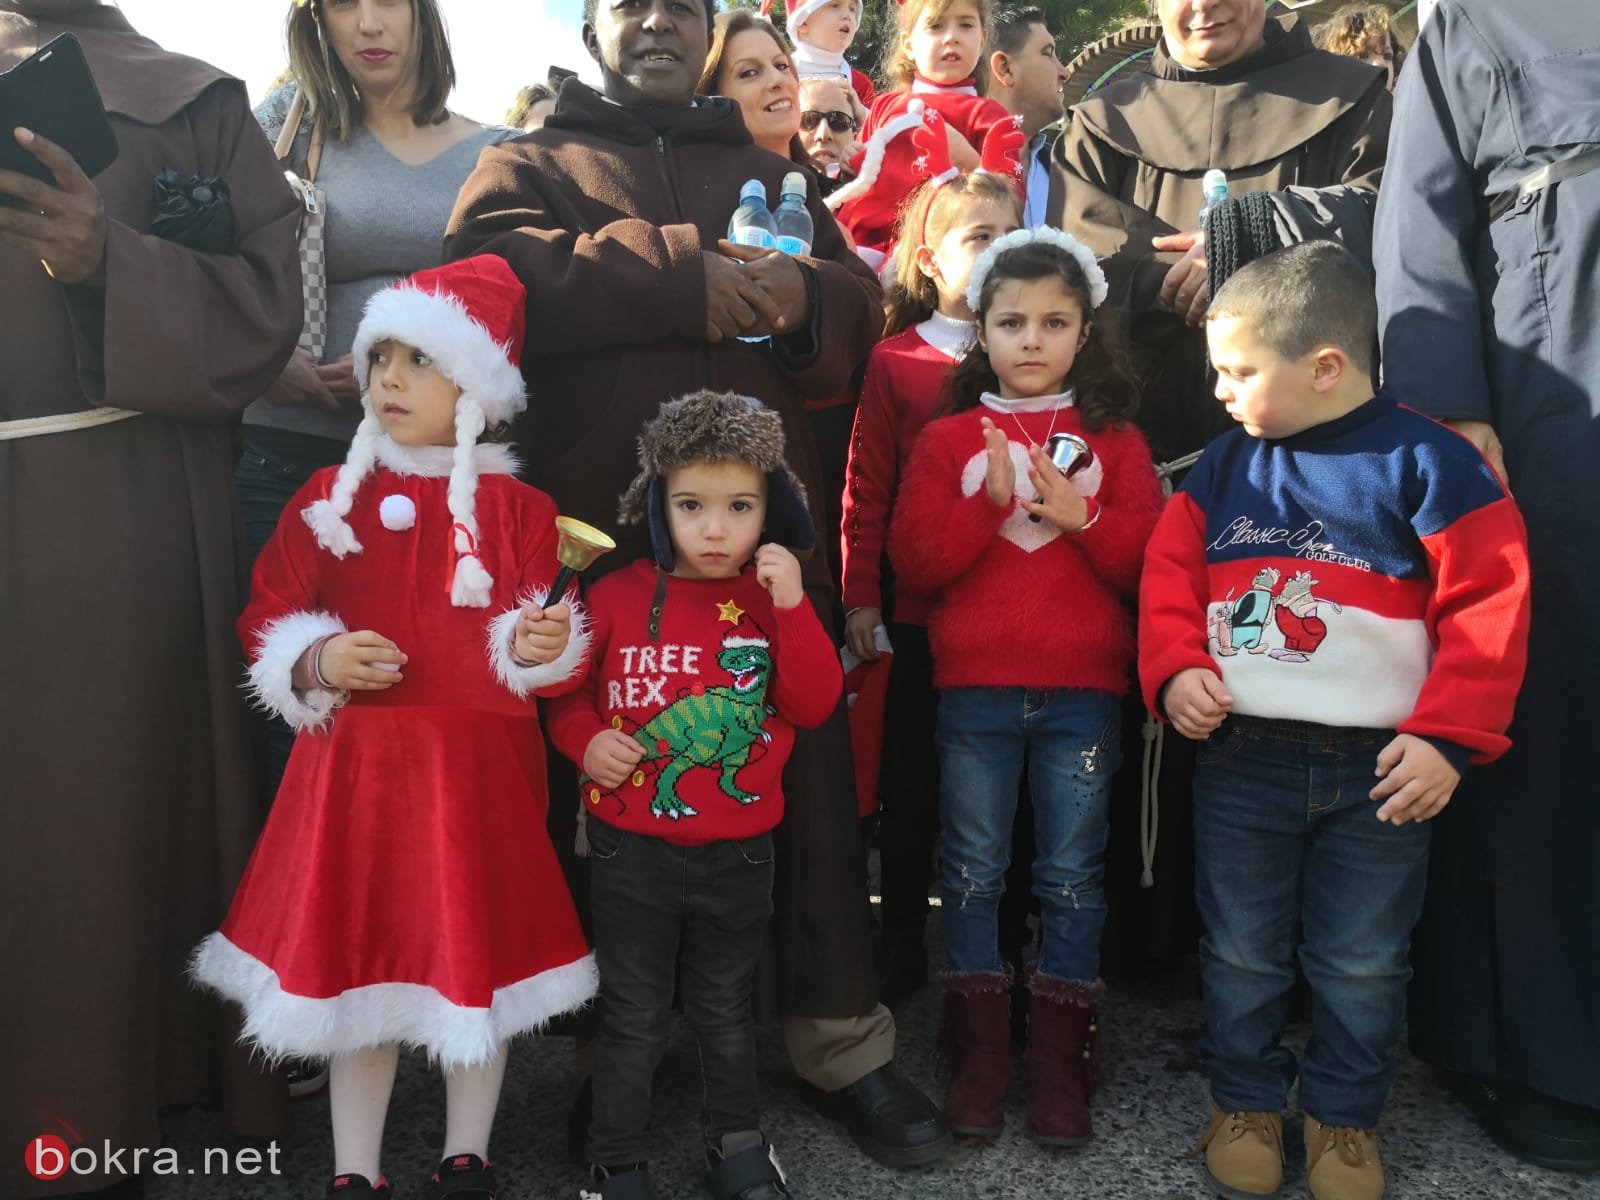 بالصور: مسيرة الميلاد تجوب الناصرة وسط أجواء رائعة-2